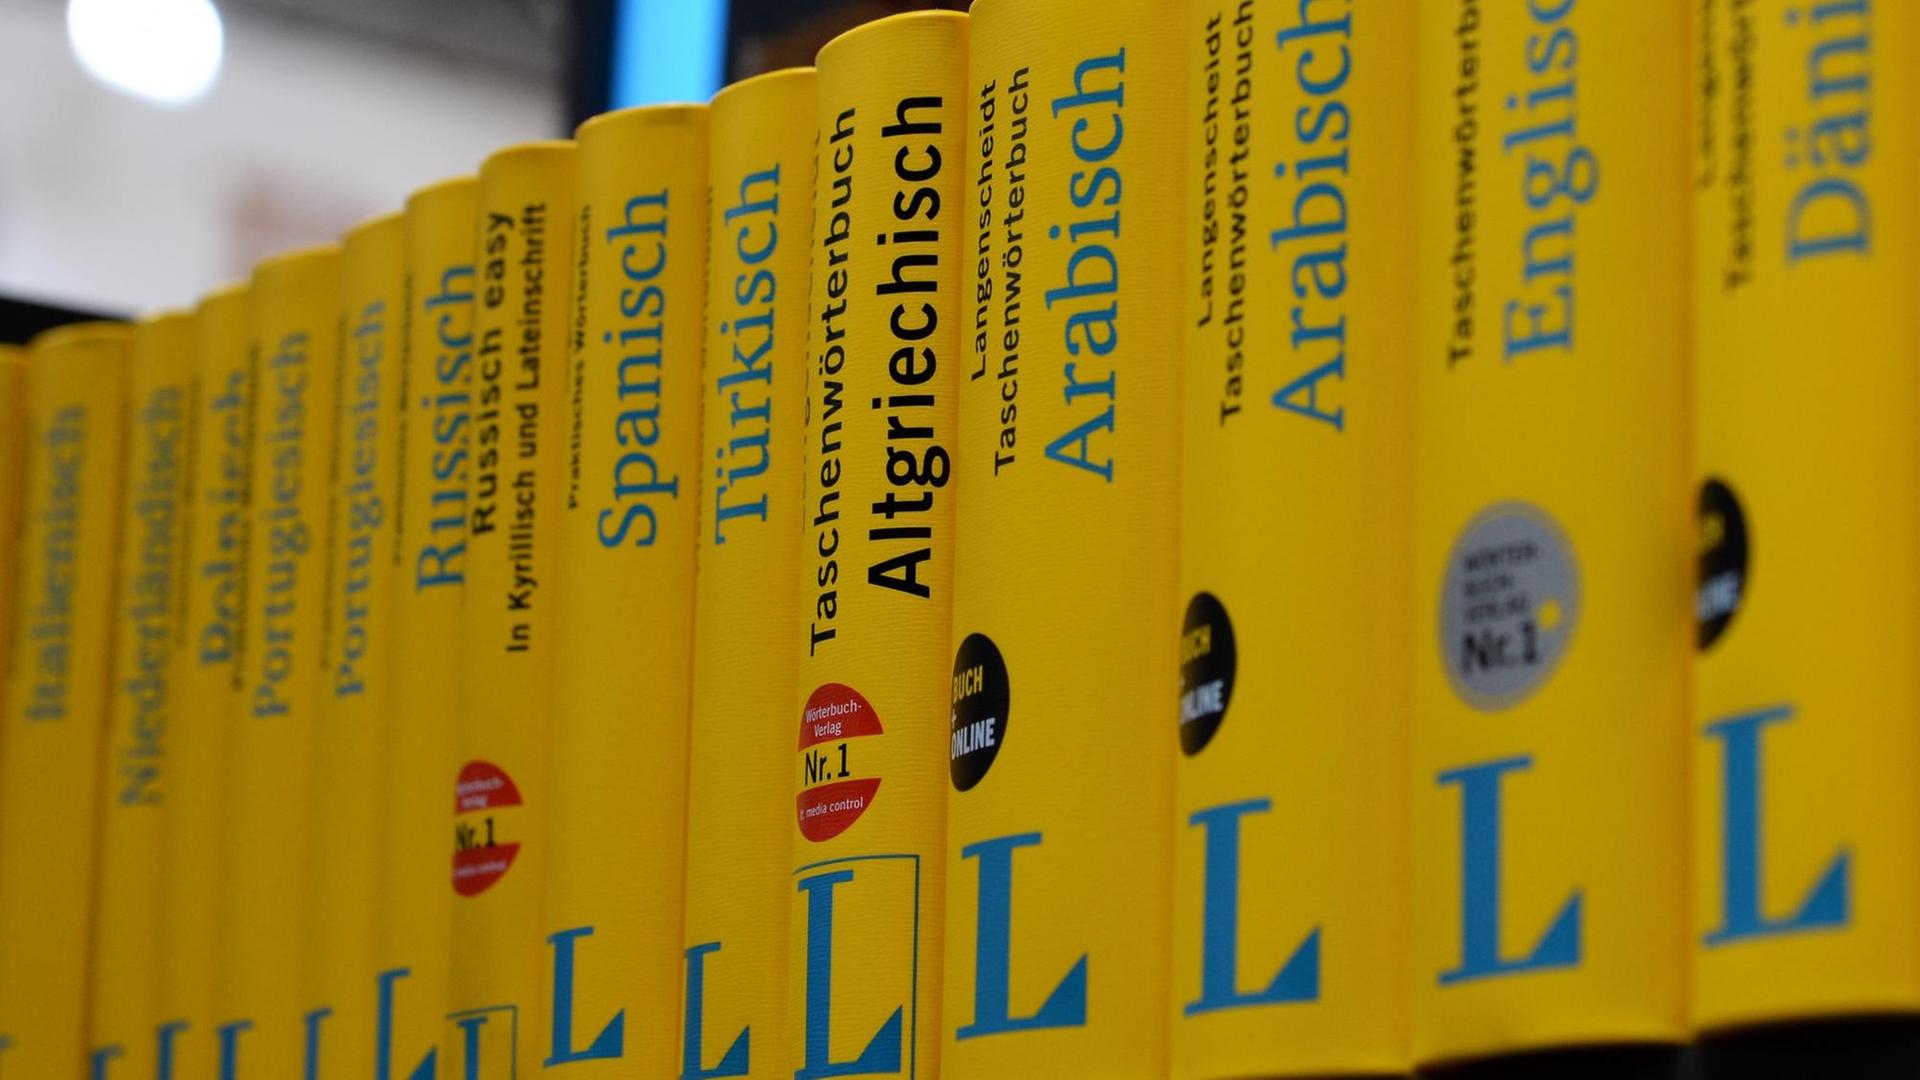 Gelbe Wörterbücher aus dem Langenscheidt Verlag, fotografiert in einer Reihe. Das Wörterbuch "Altgriechisch" sticht mittig aus der Reihe hervor, da in schwarzer statt blauer Schrift gedruckt ist.